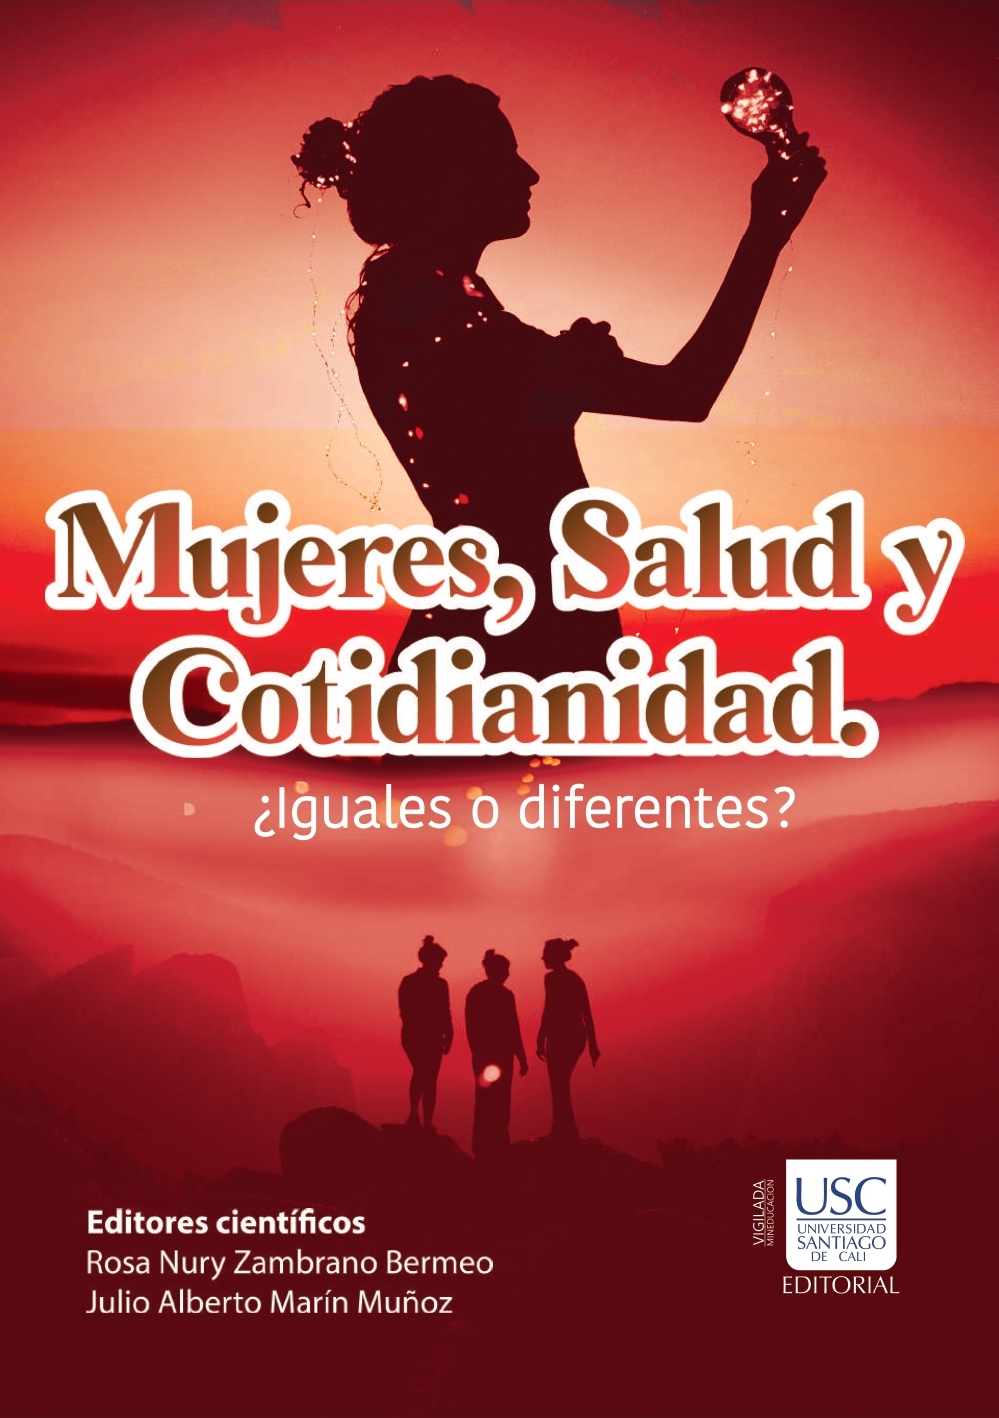 Imagen de portada del libro Mujeres, Salud y Cotidianidad. ¿Iguales o diferentes?